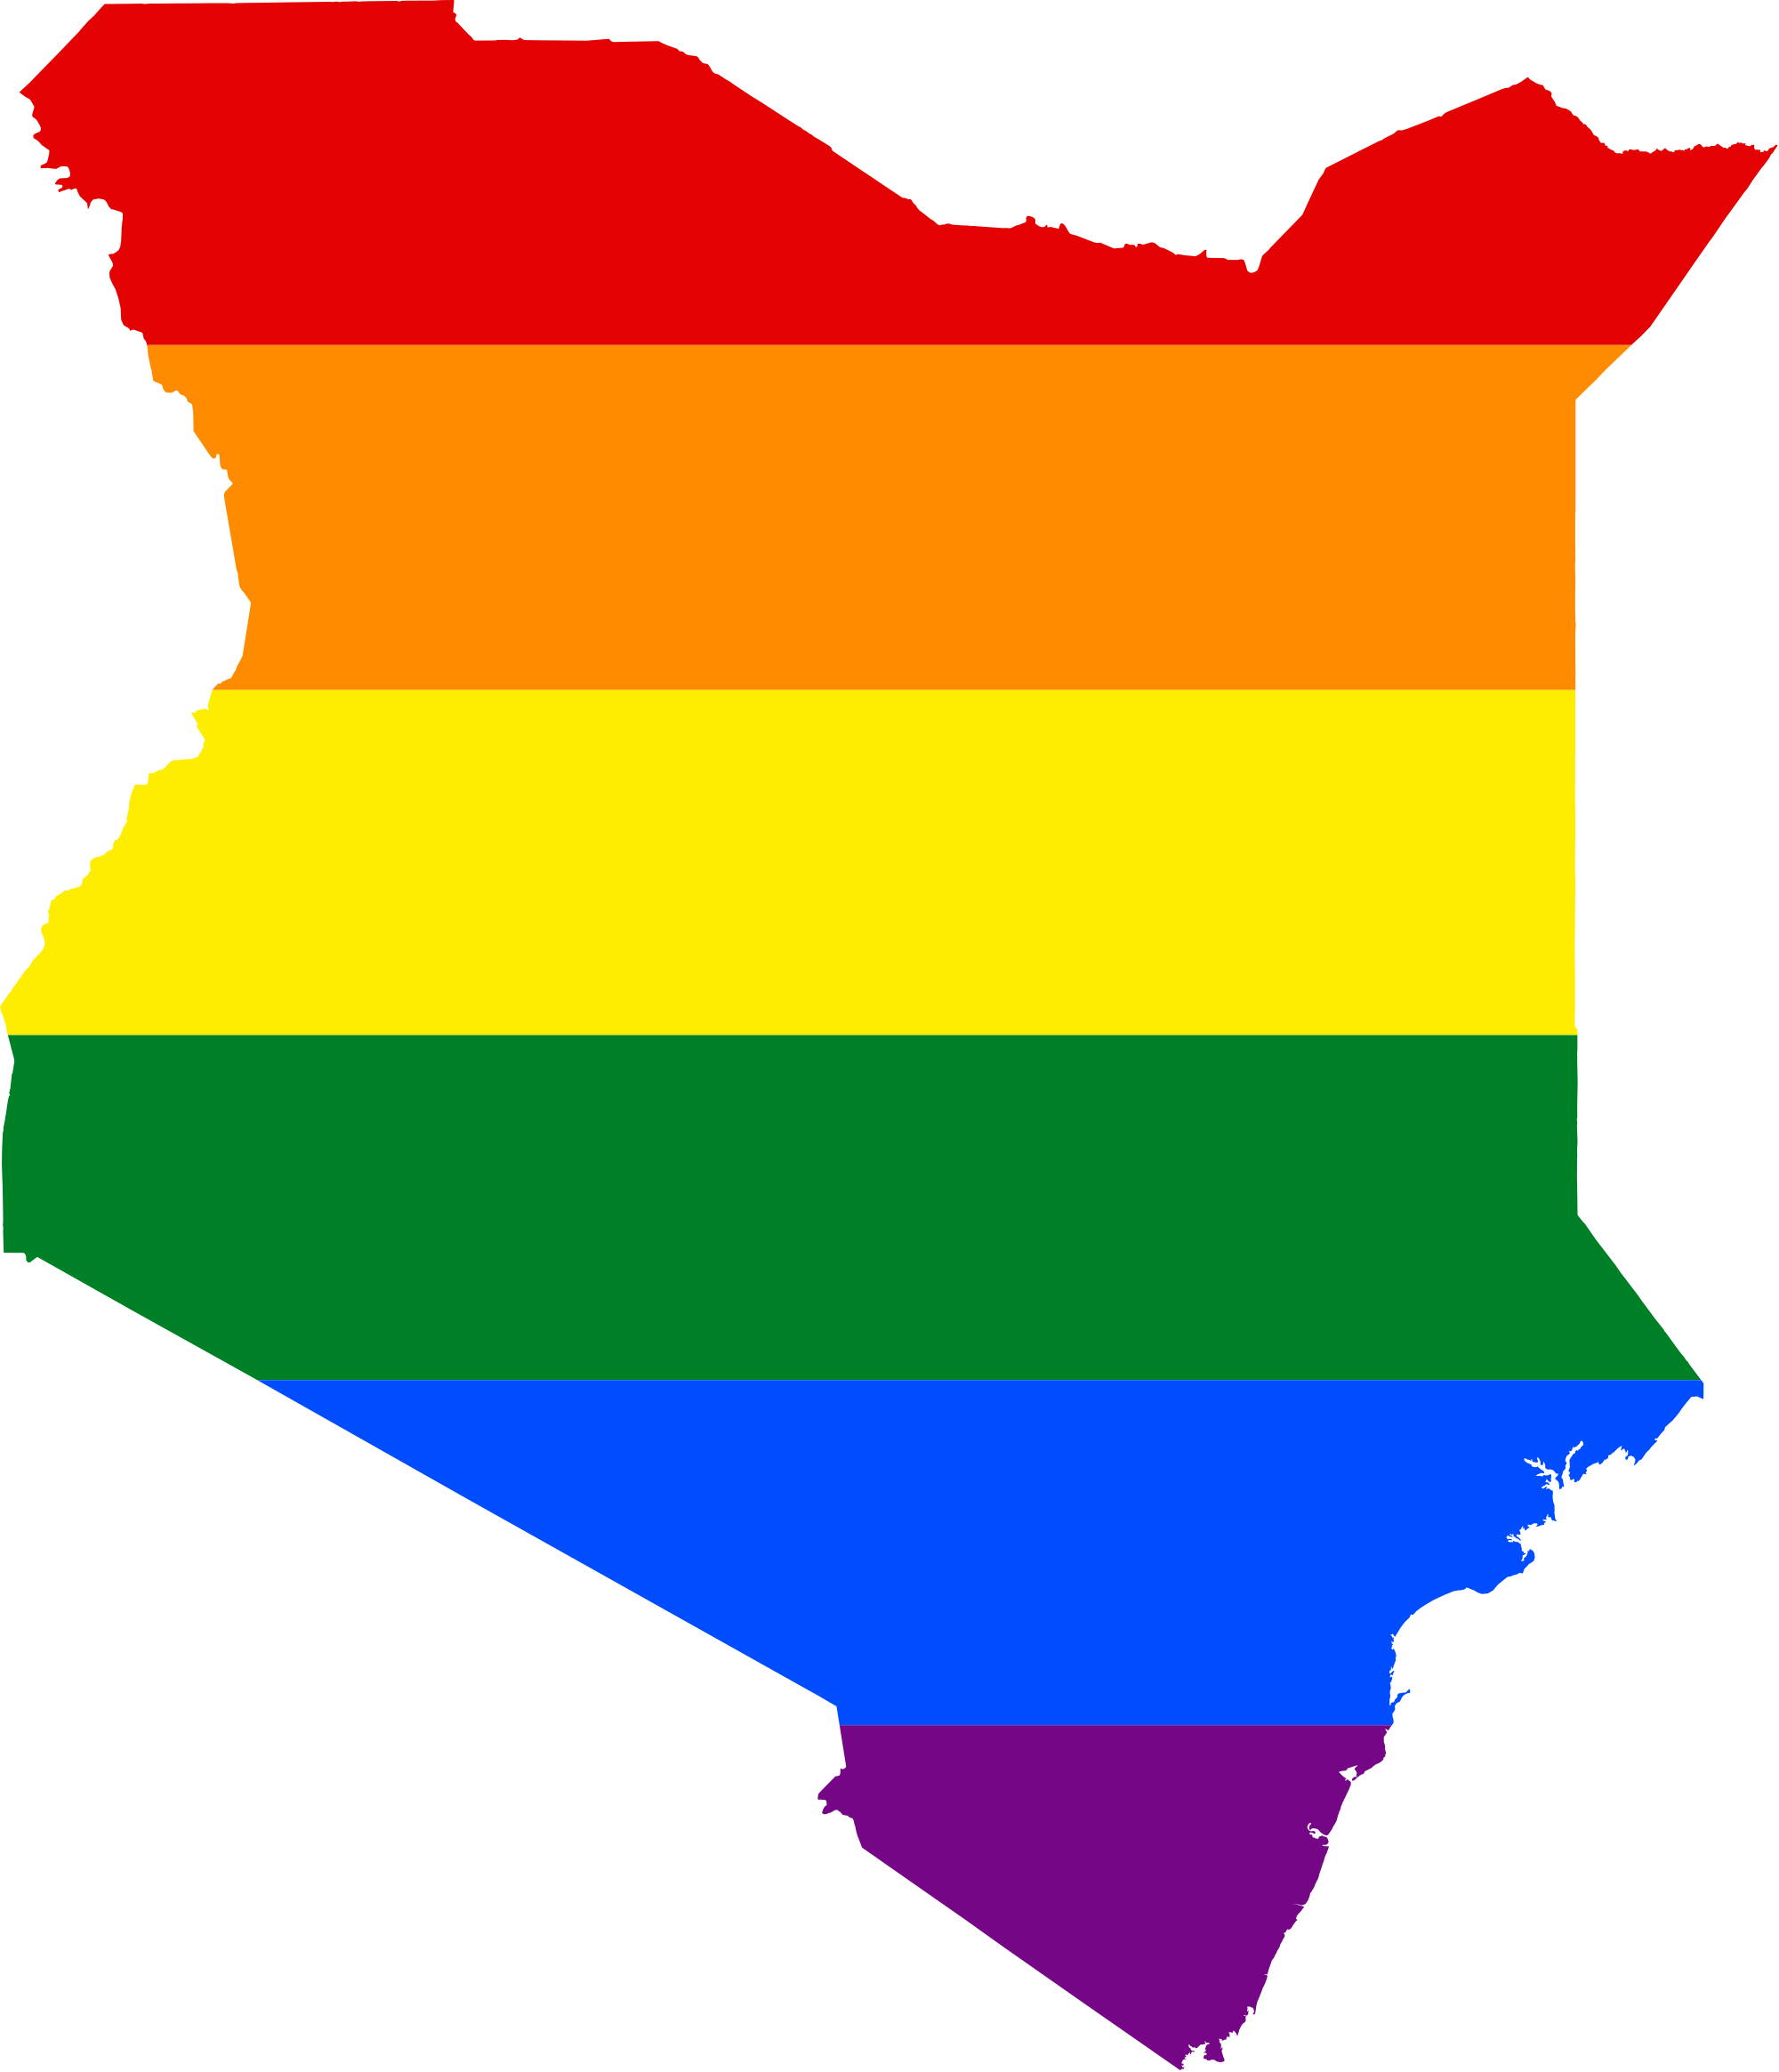 File:LGBT flag map of Kenya.svg